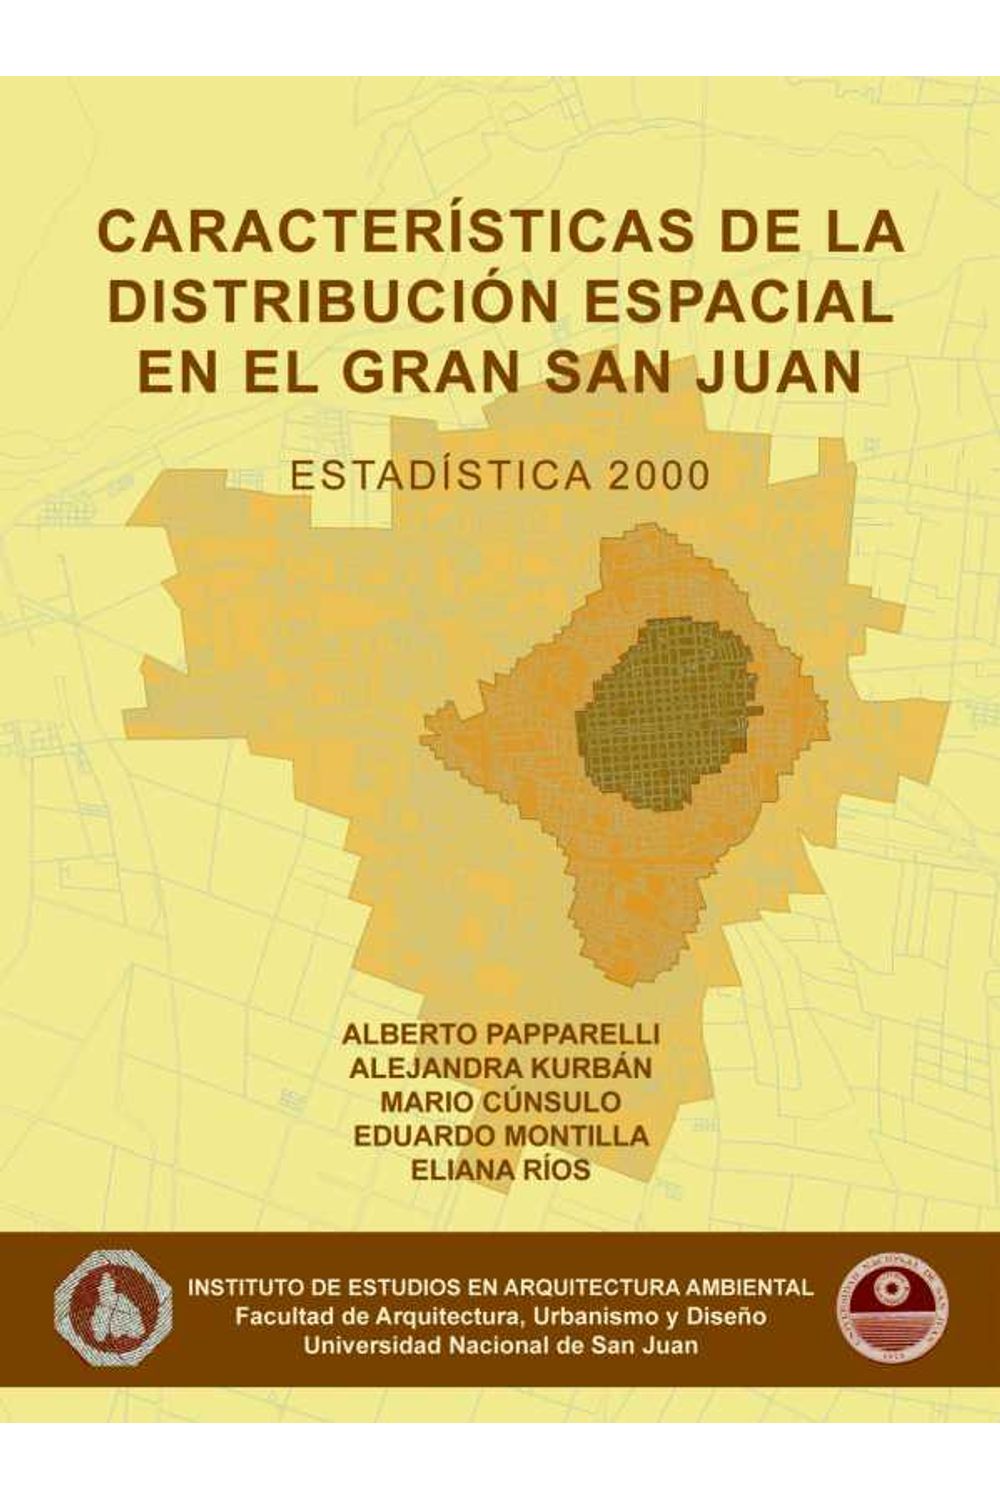 bm-caracteristicas-de-la-distribucion-espacial-en-el-gran-san-juan-2000-nobukodiseno-editorial-9789875840768